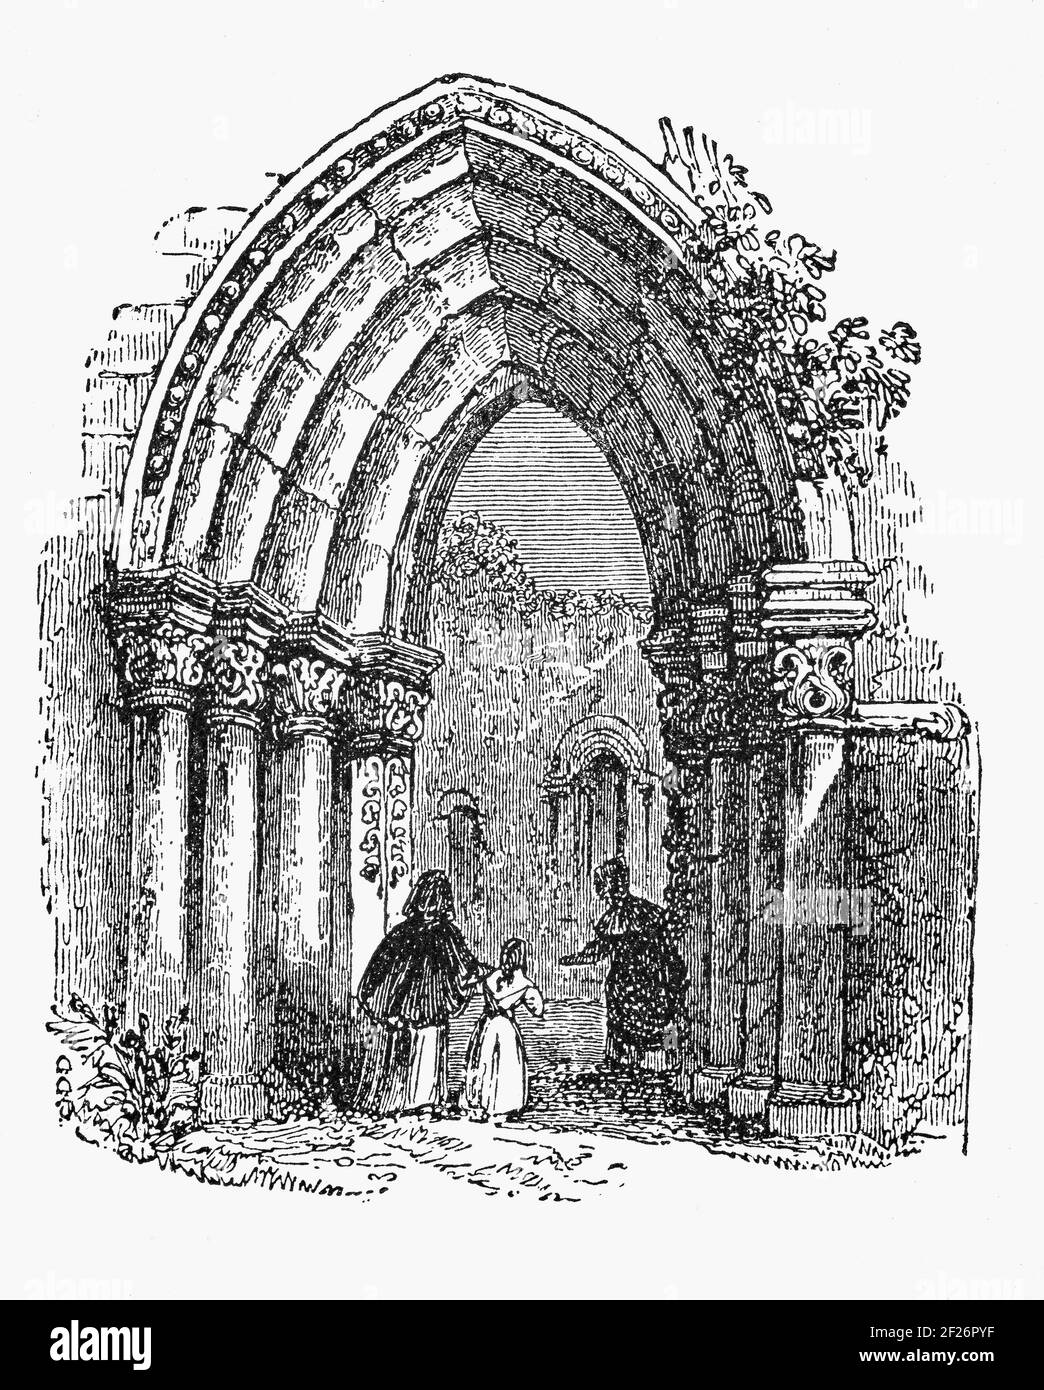 Eine 19th-Jahrhundert-Illustration des romanischen Torbogs in Cong Abbey, auch bekannt als die Royal Abbey of Cong, in der Grafschaft Mayo, Irland. Die ehemalige Augustiner-Abtei, war eine der frühesten Augustiner-Siedlungen und stammt meist aus dem 13th. Jahrhundert. Stockfoto